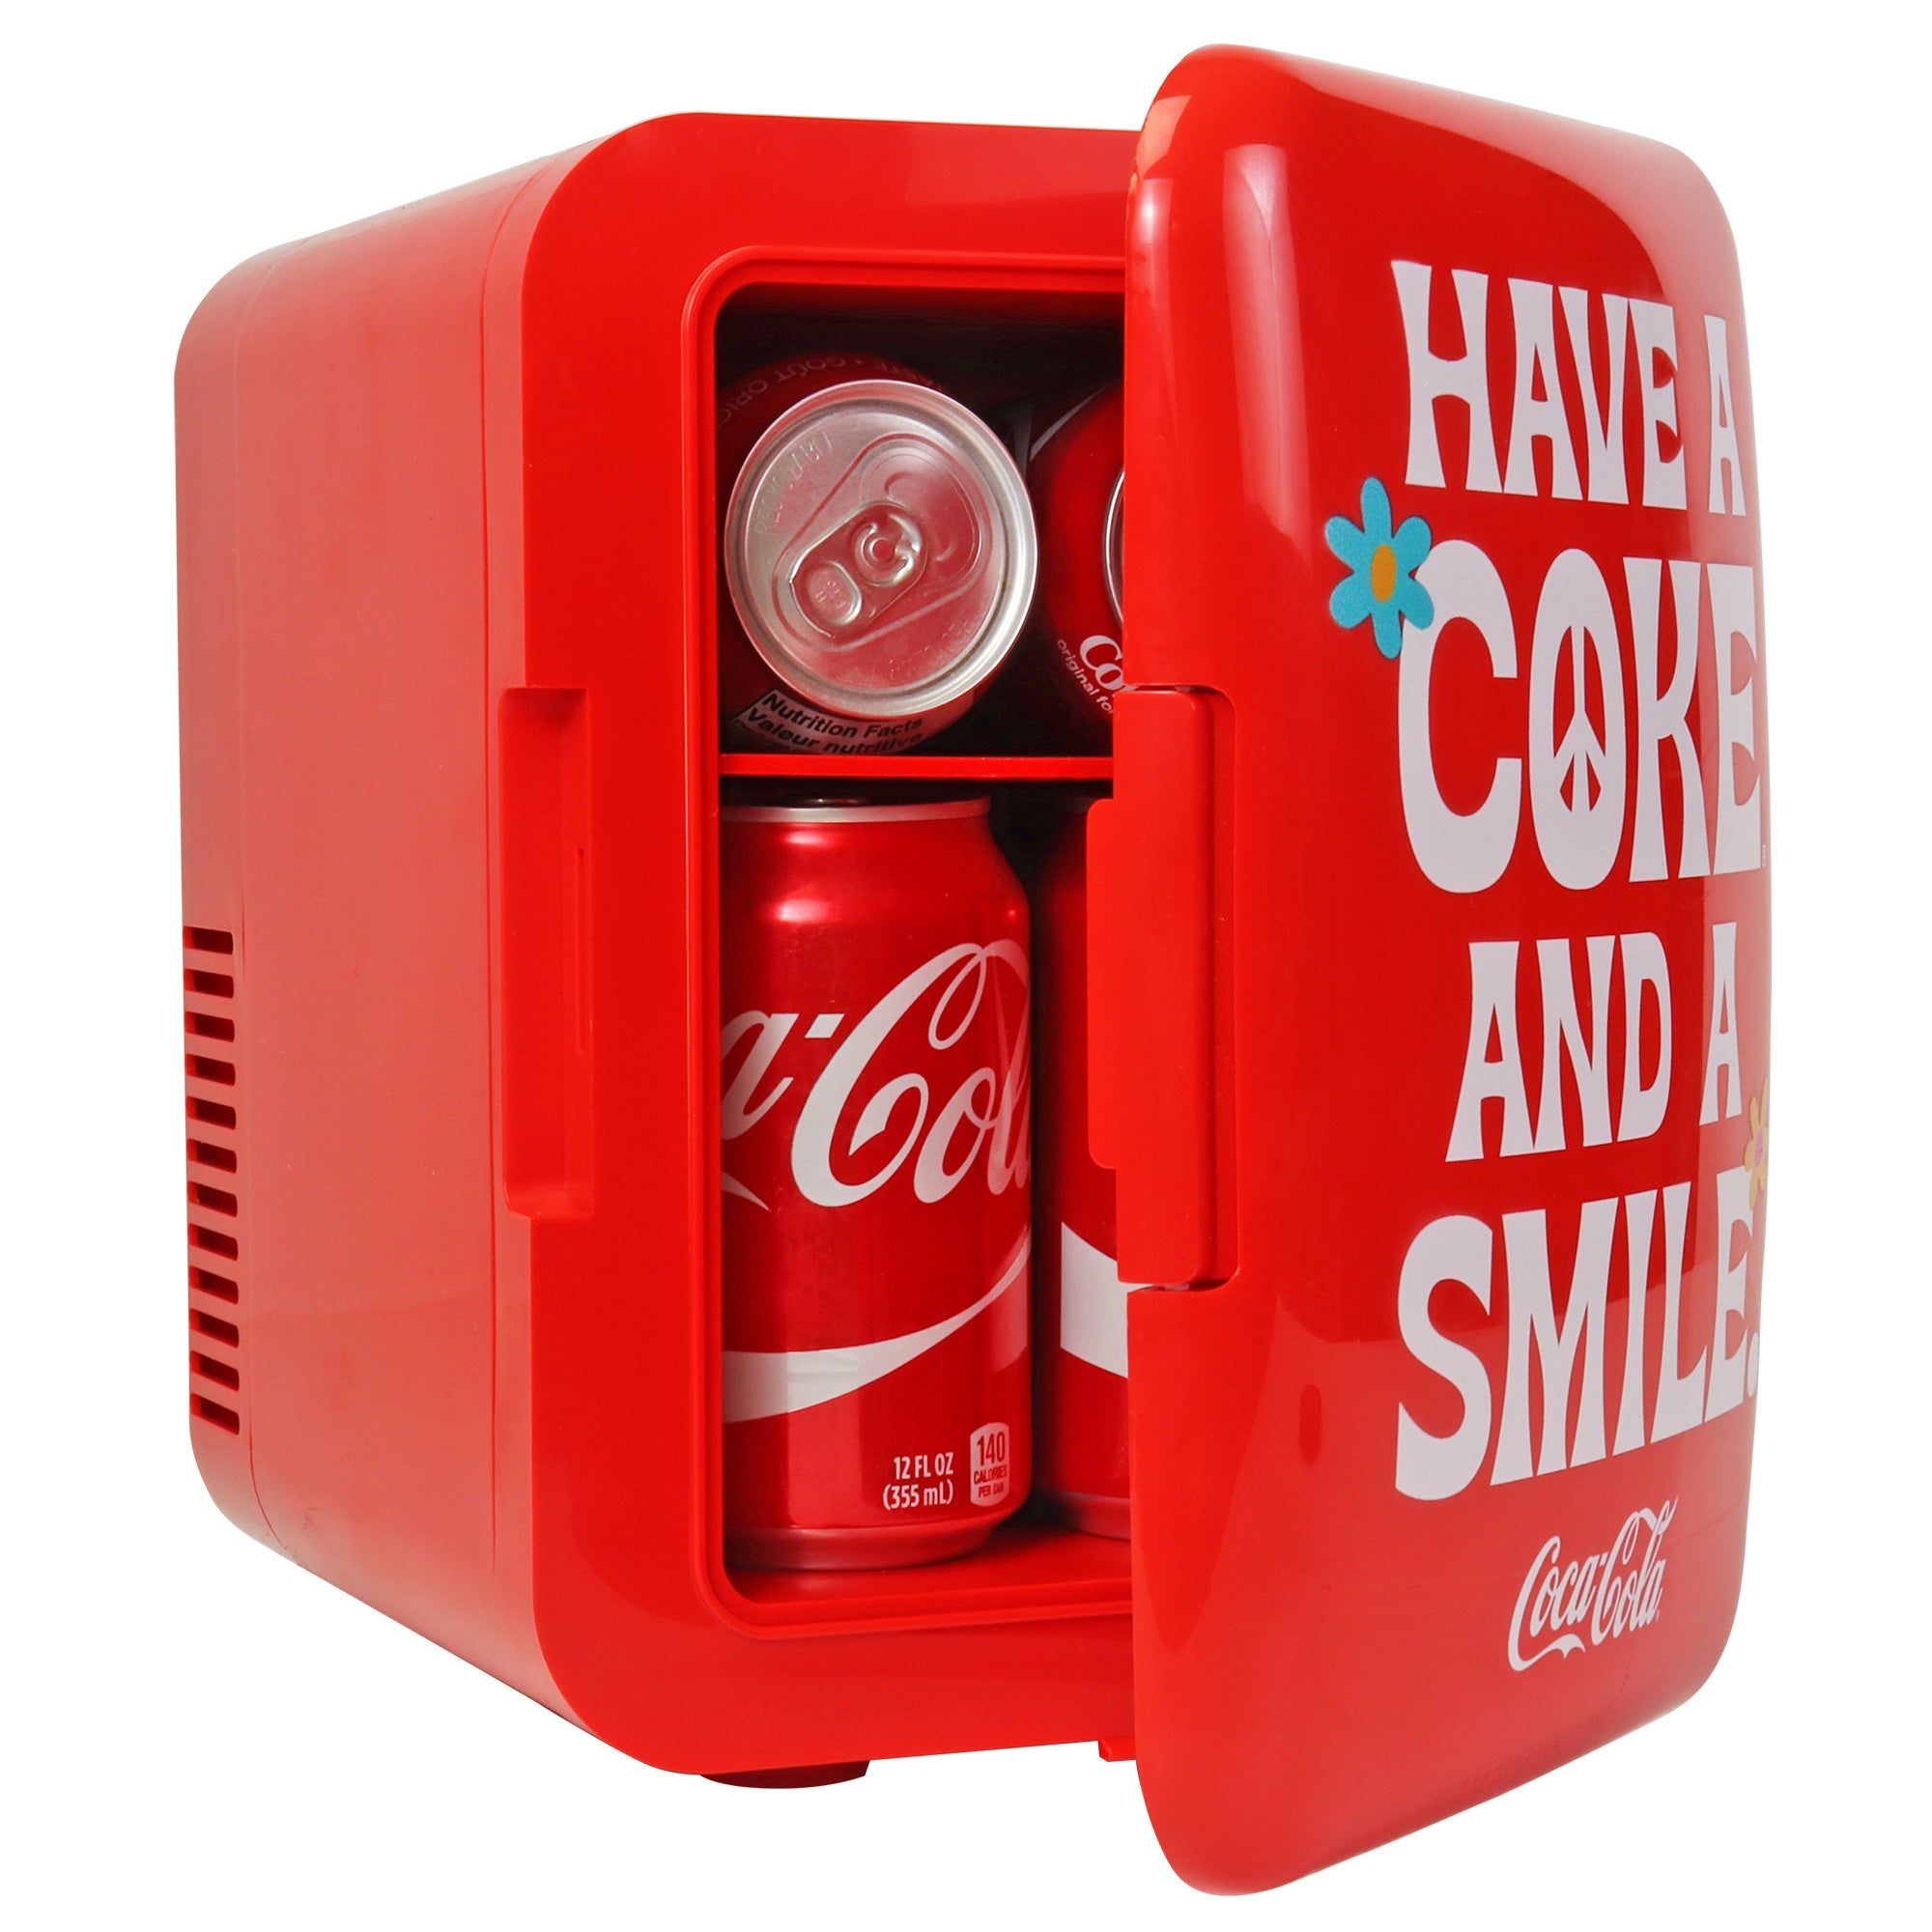 Coca Cola Vending Machine Mini Fridge